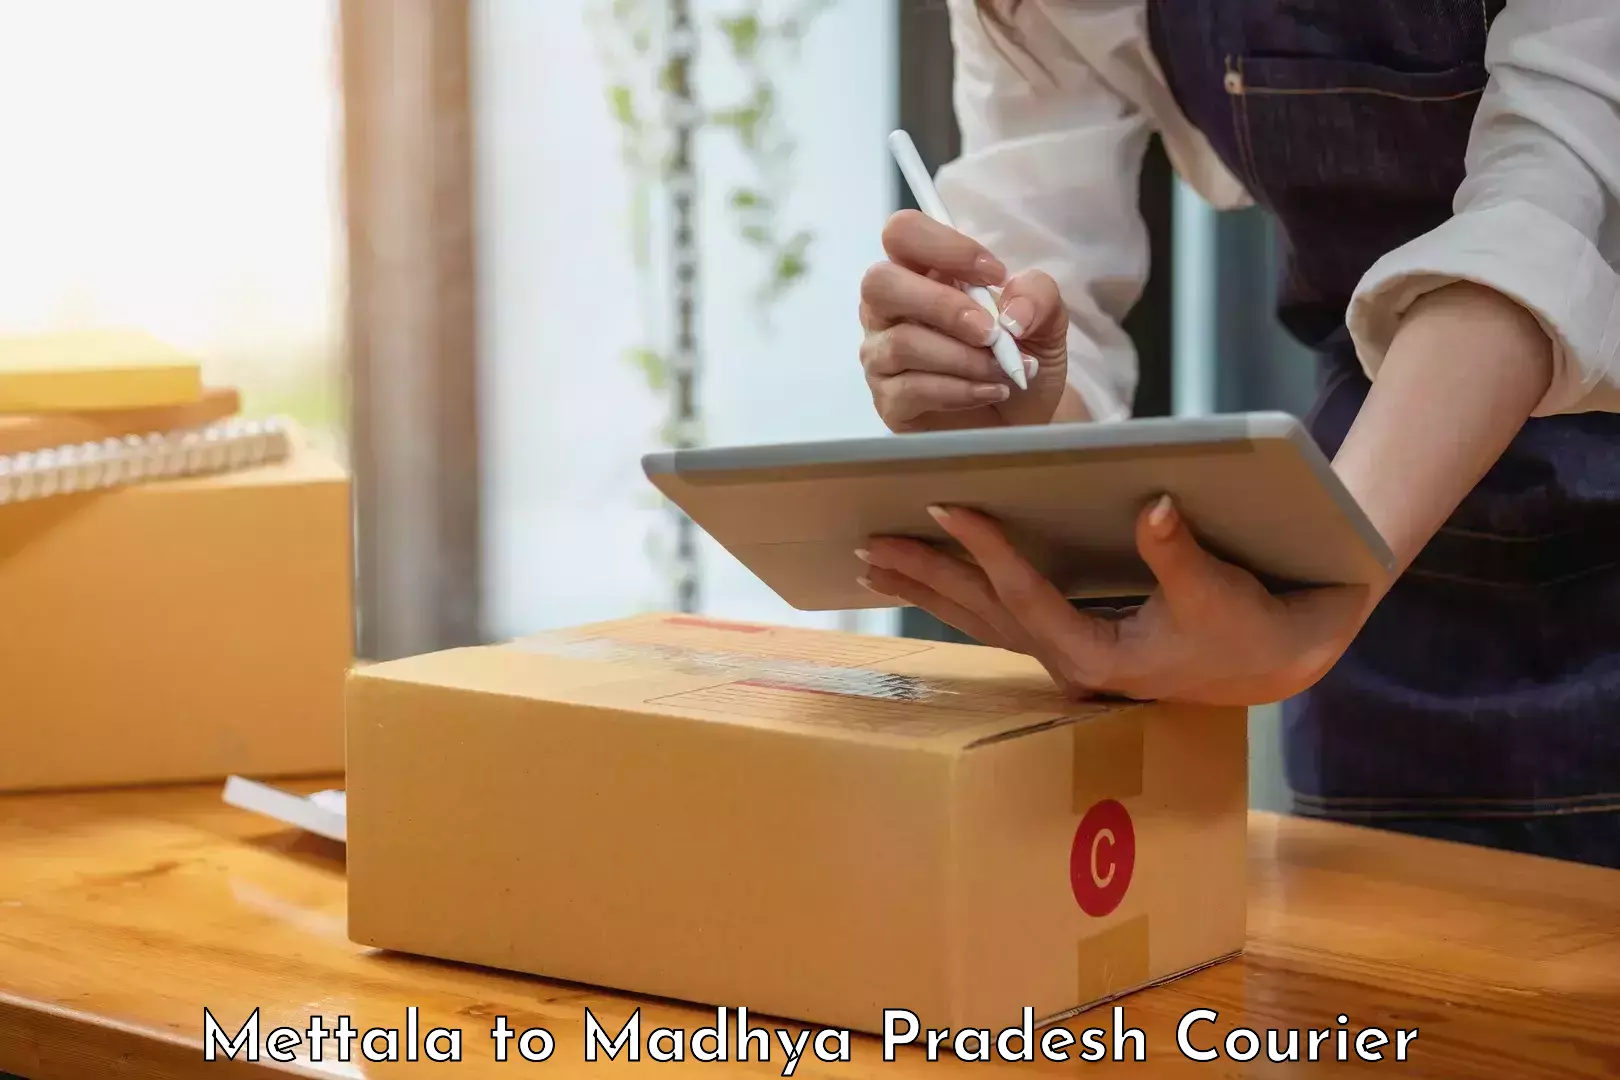 Modern courier technology Mettala to Chhindwara